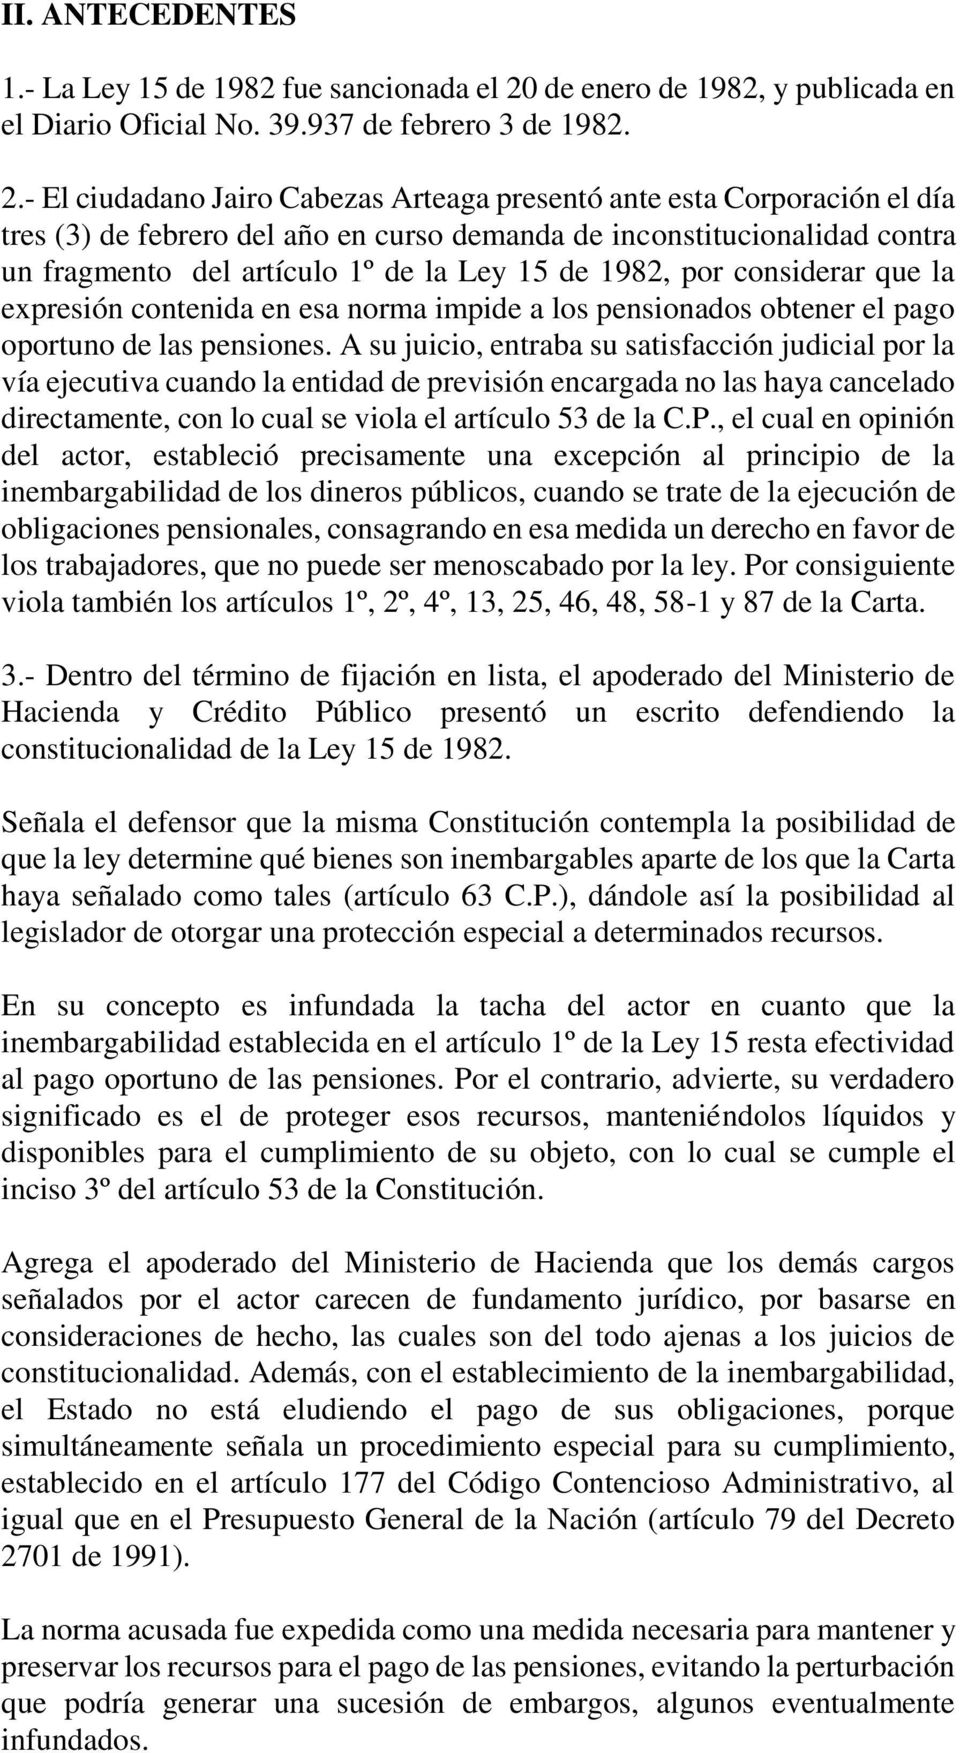 - El ciudadano Jairo Cabezas Arteaga presentó ante esta Corporación el día tres (3) de febrero del año en curso demanda de inconstitucionalidad contra un fragmento del artículo 1º de la Ley 15 de